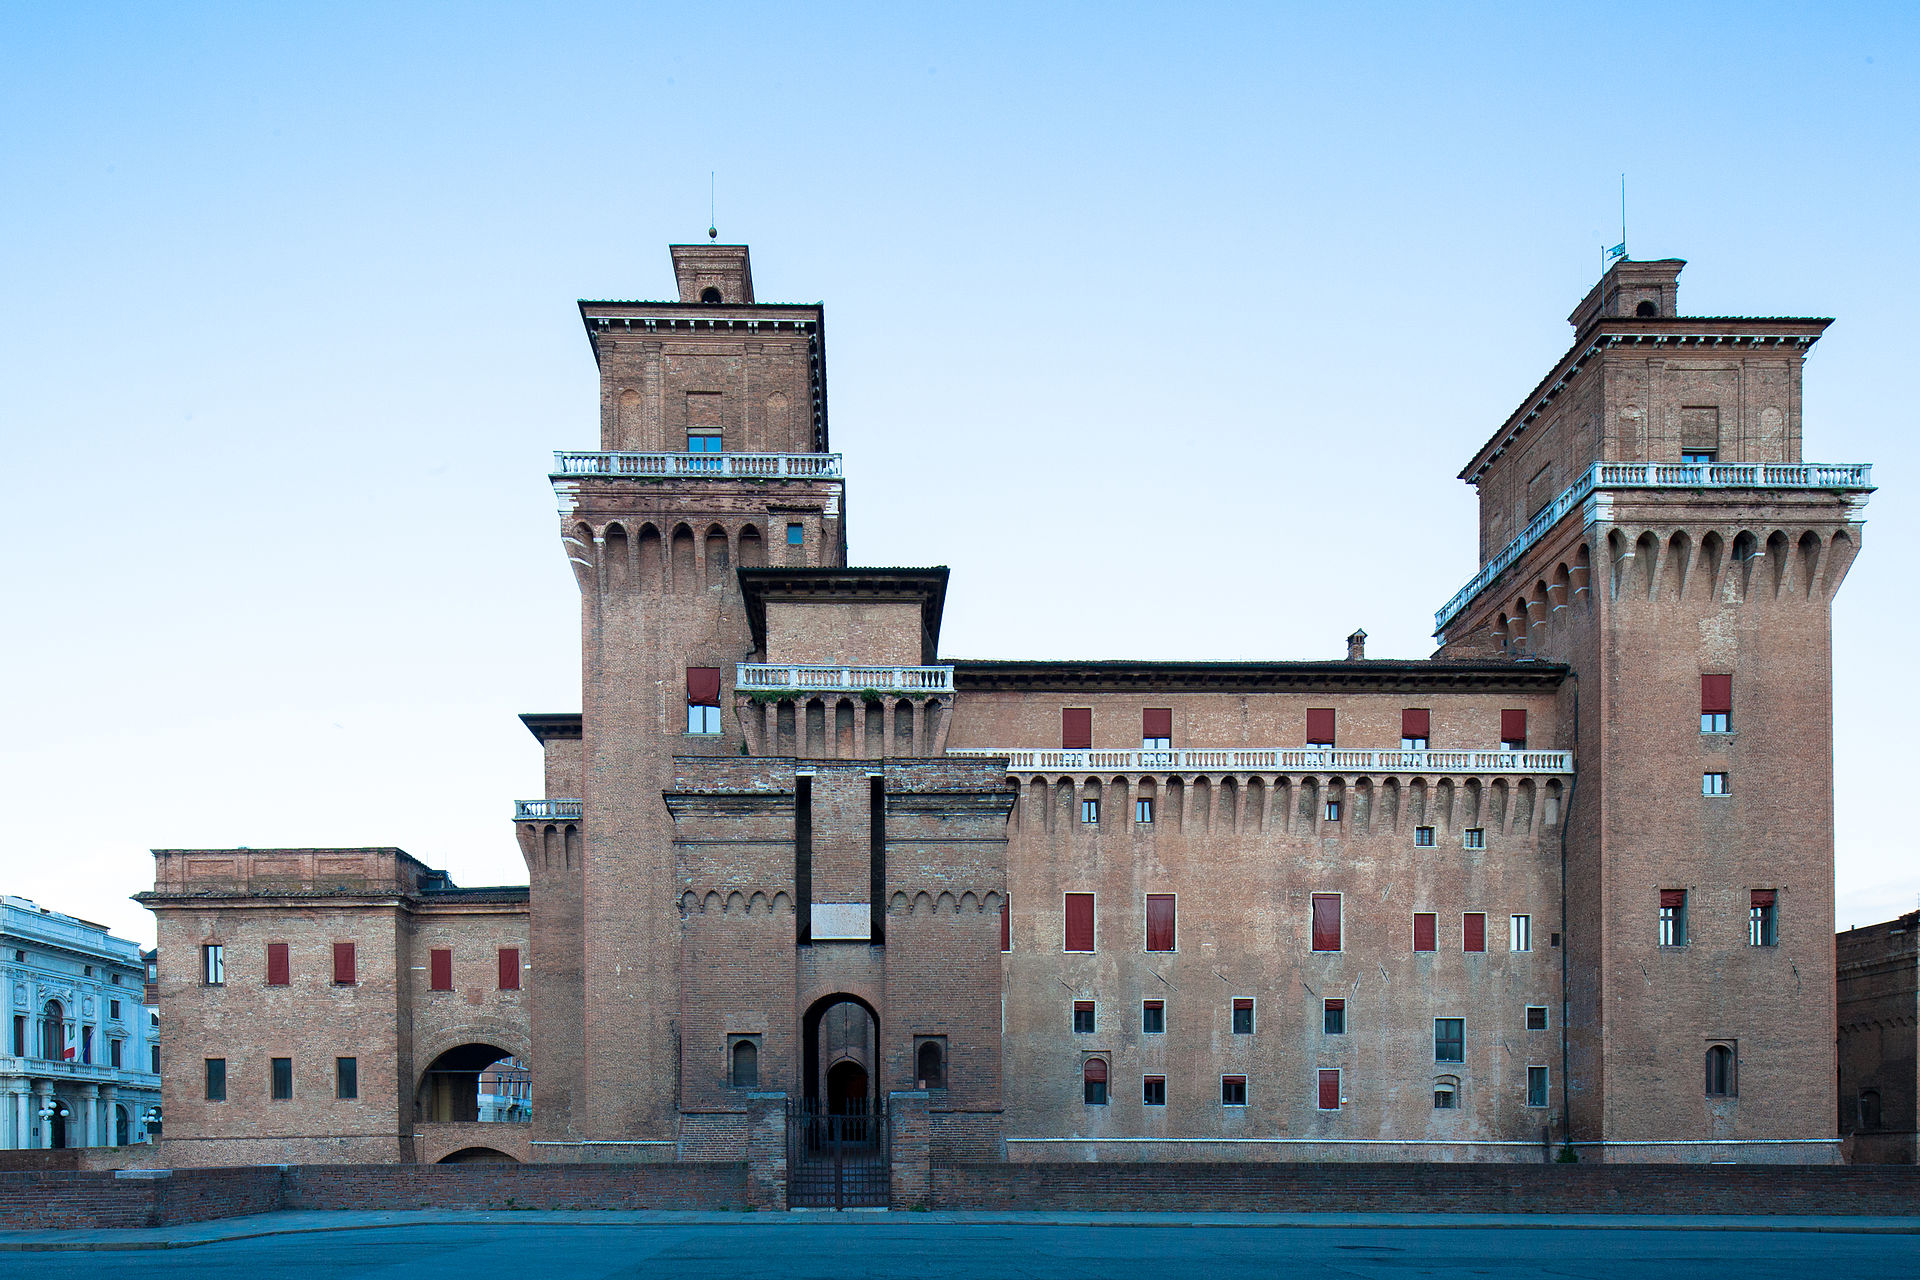 The Castle of Ferrara (Castello Estense)